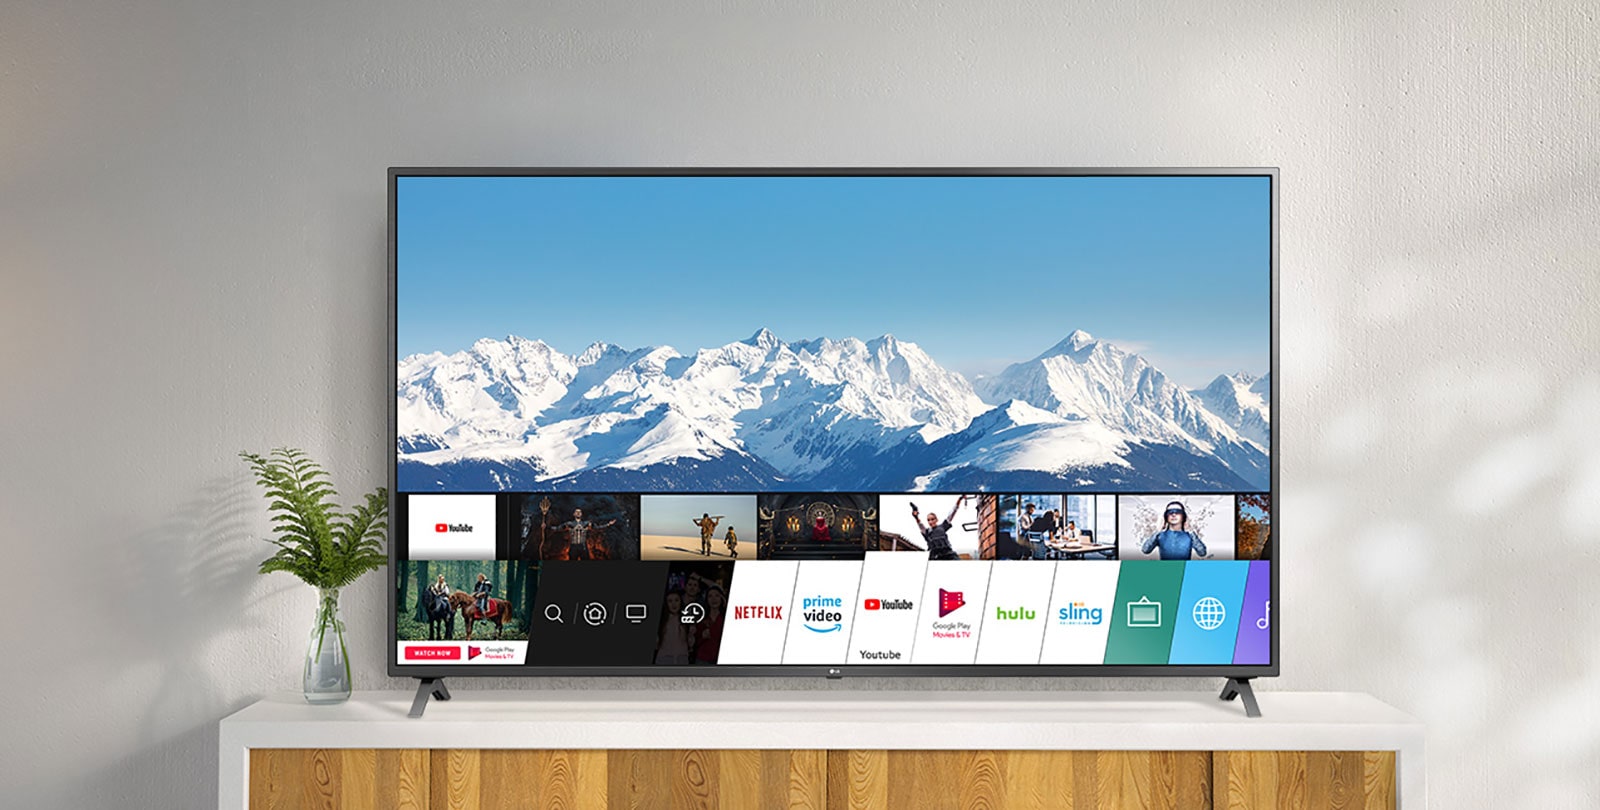 Un televisor encima de un soporte blanco contra una pared blanca. El televisor muestra la pantalla de inicio con webOS.